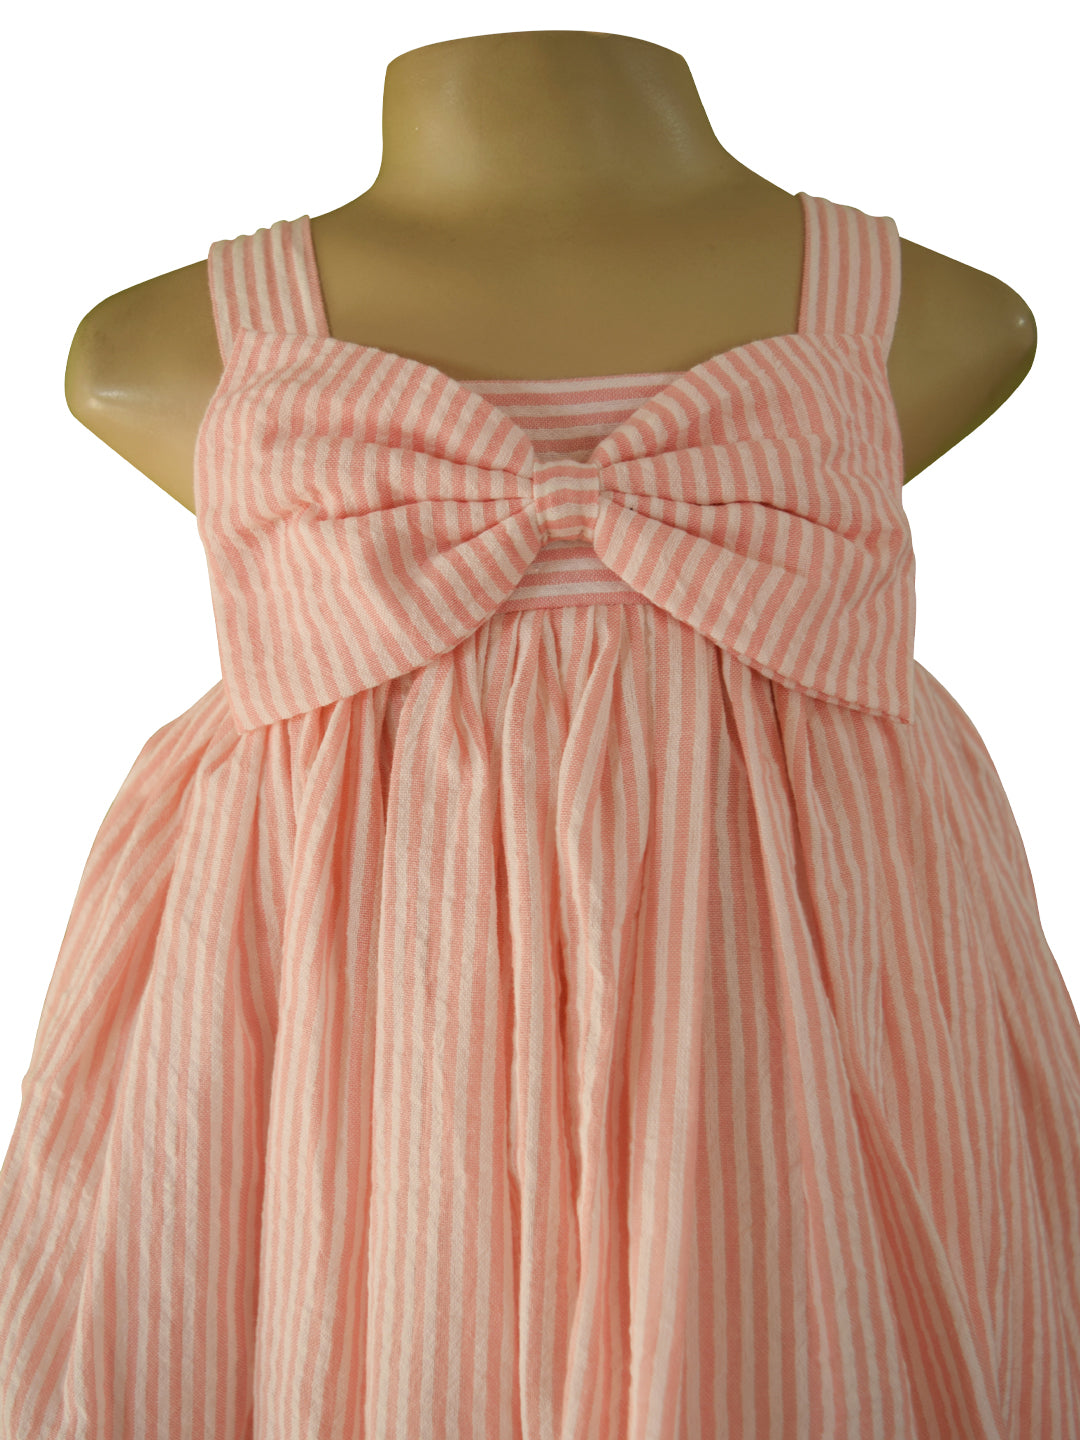 Faye Pink Stripe Bow Dress